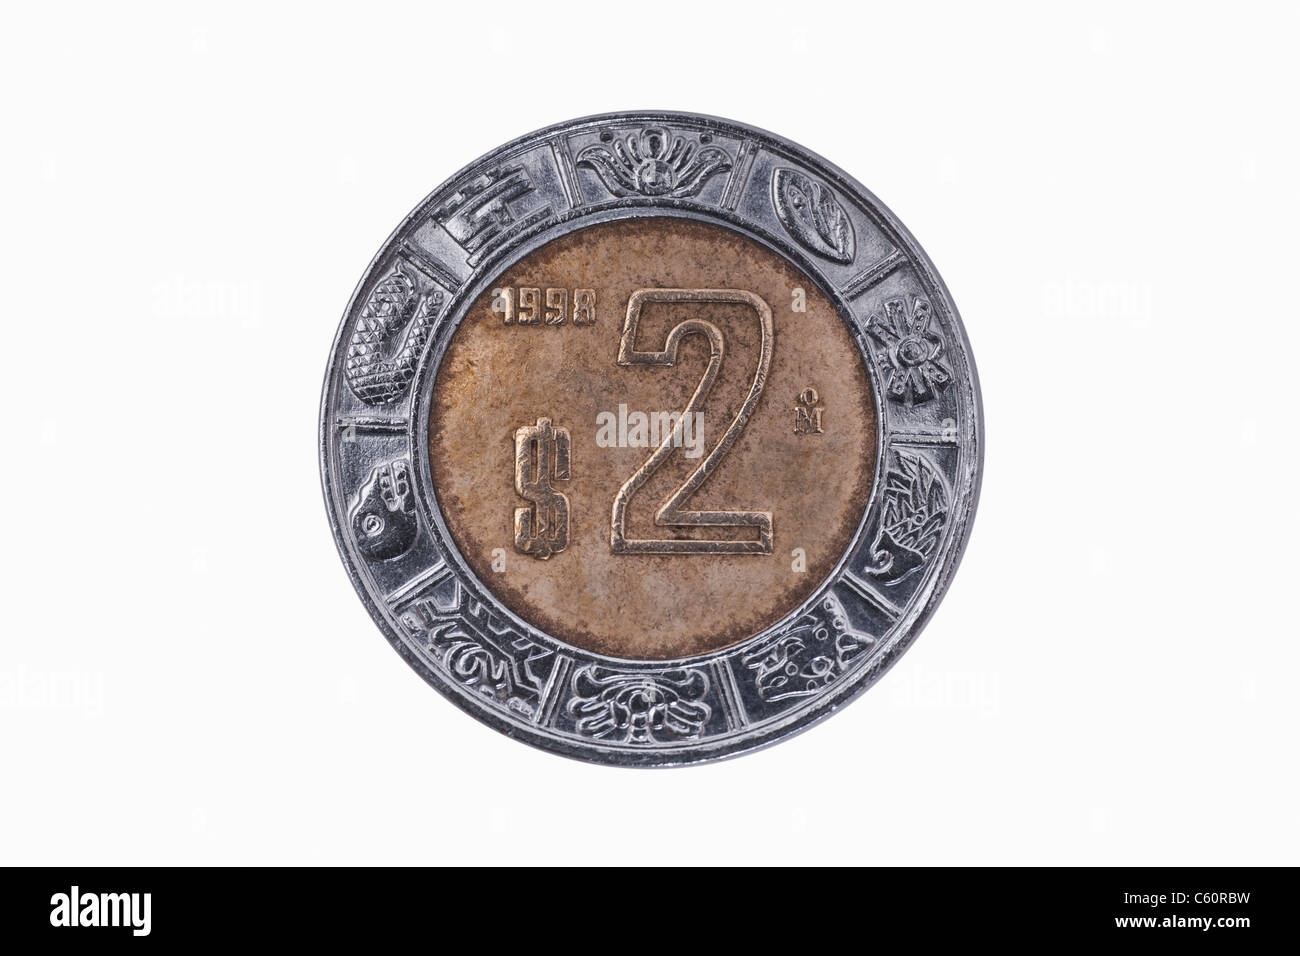 Detailansicht der 2 Peso Münze aus Mexiko aus Dem Jahr 1998 | Detail-Foto von einem 2-Peso-Münze aus Mexiko aus dem Jahr 1998 Stockfoto